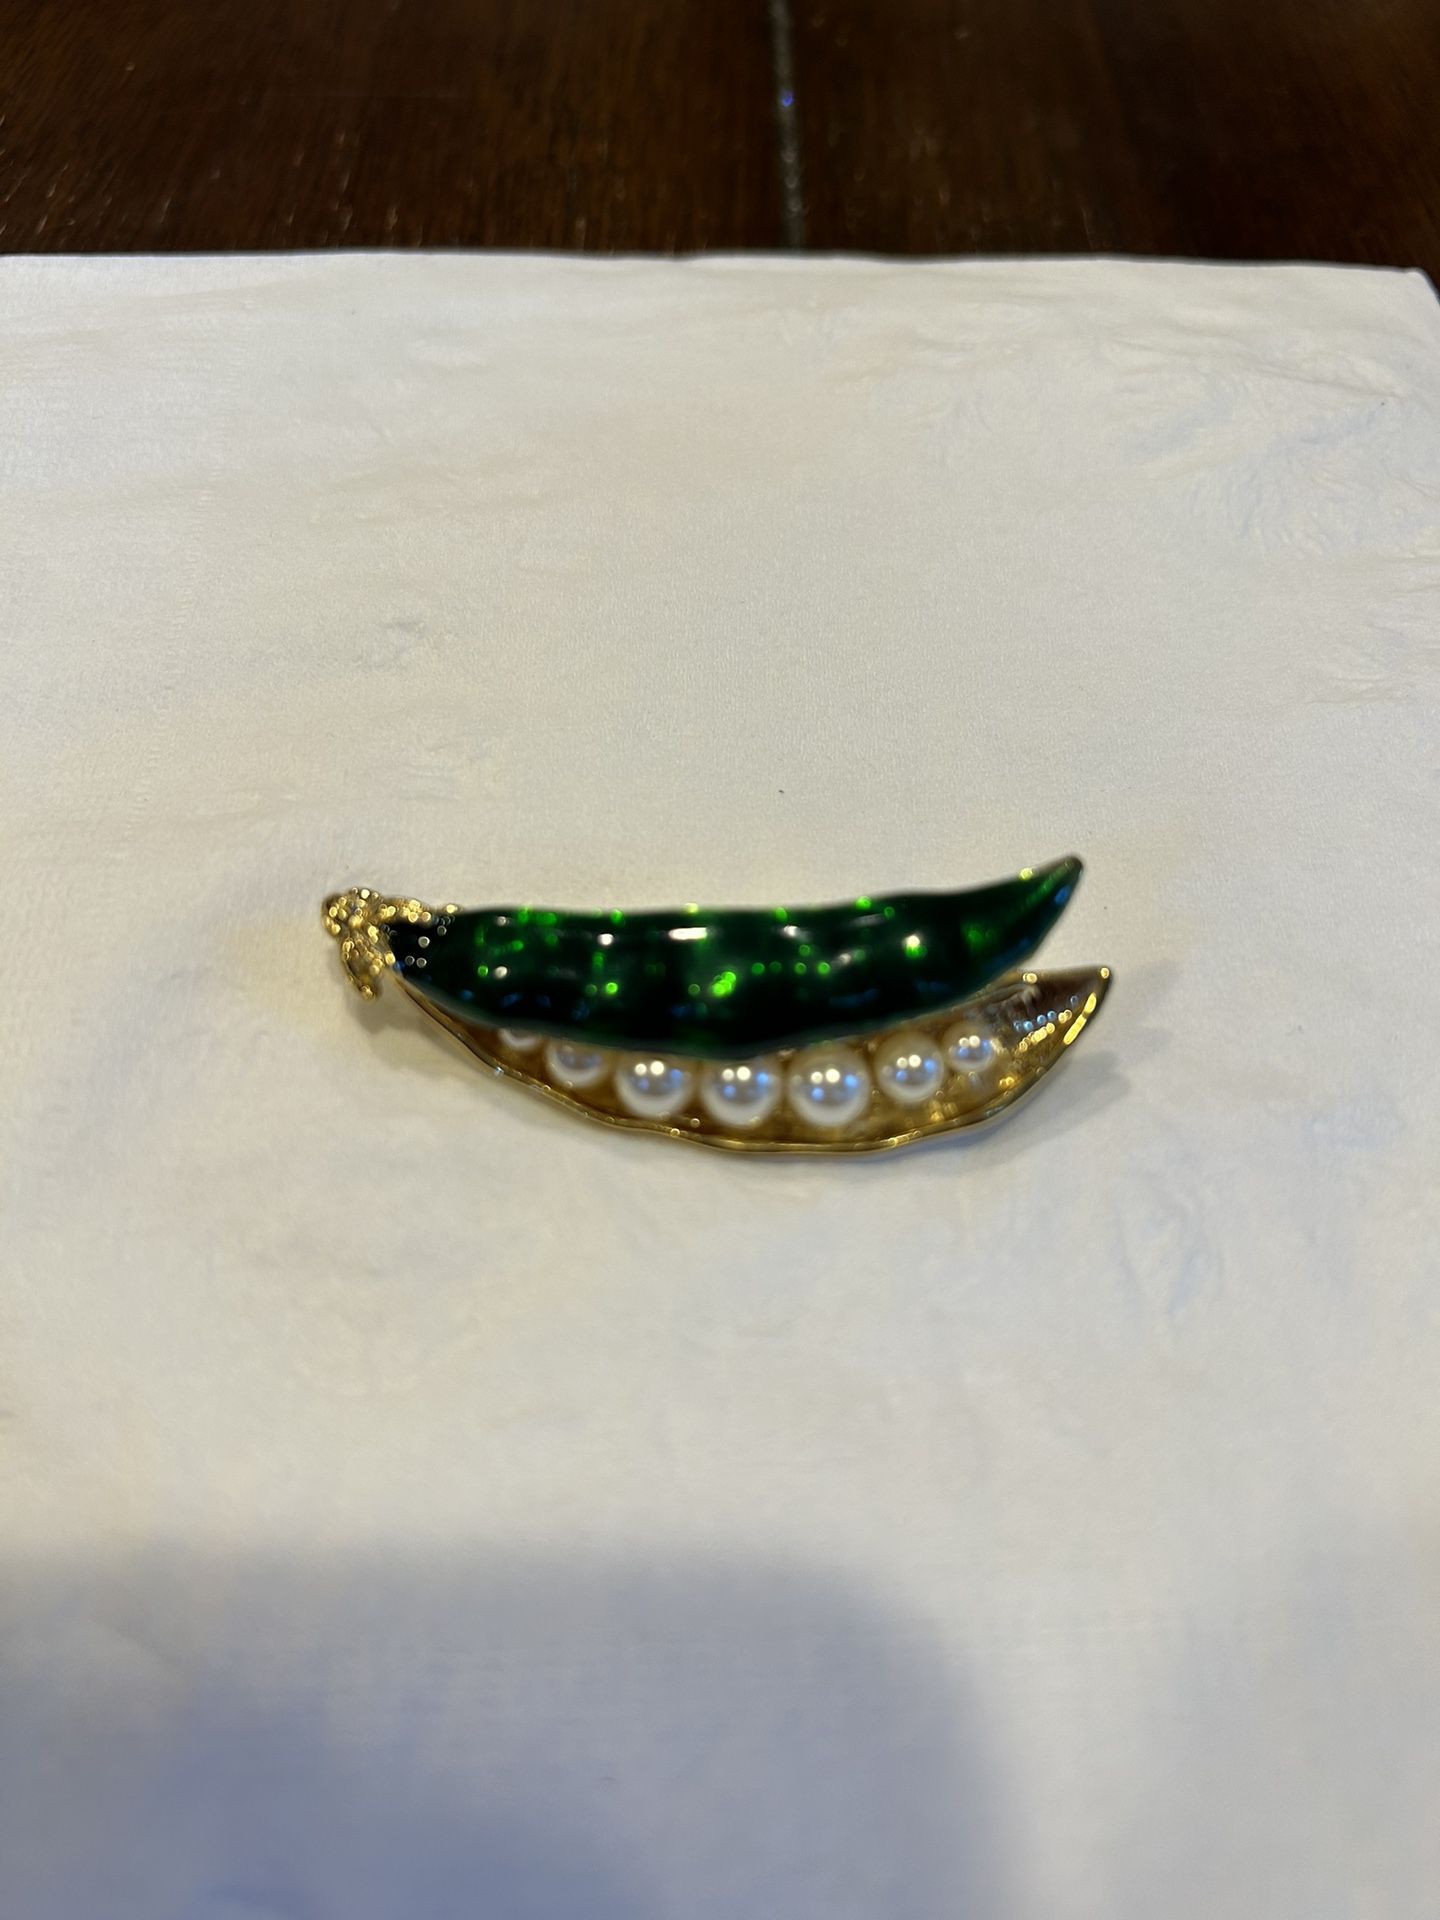 Vintage Gold Tone Green Pea Pod Enamel Brooch Pin w/Faux Pearls